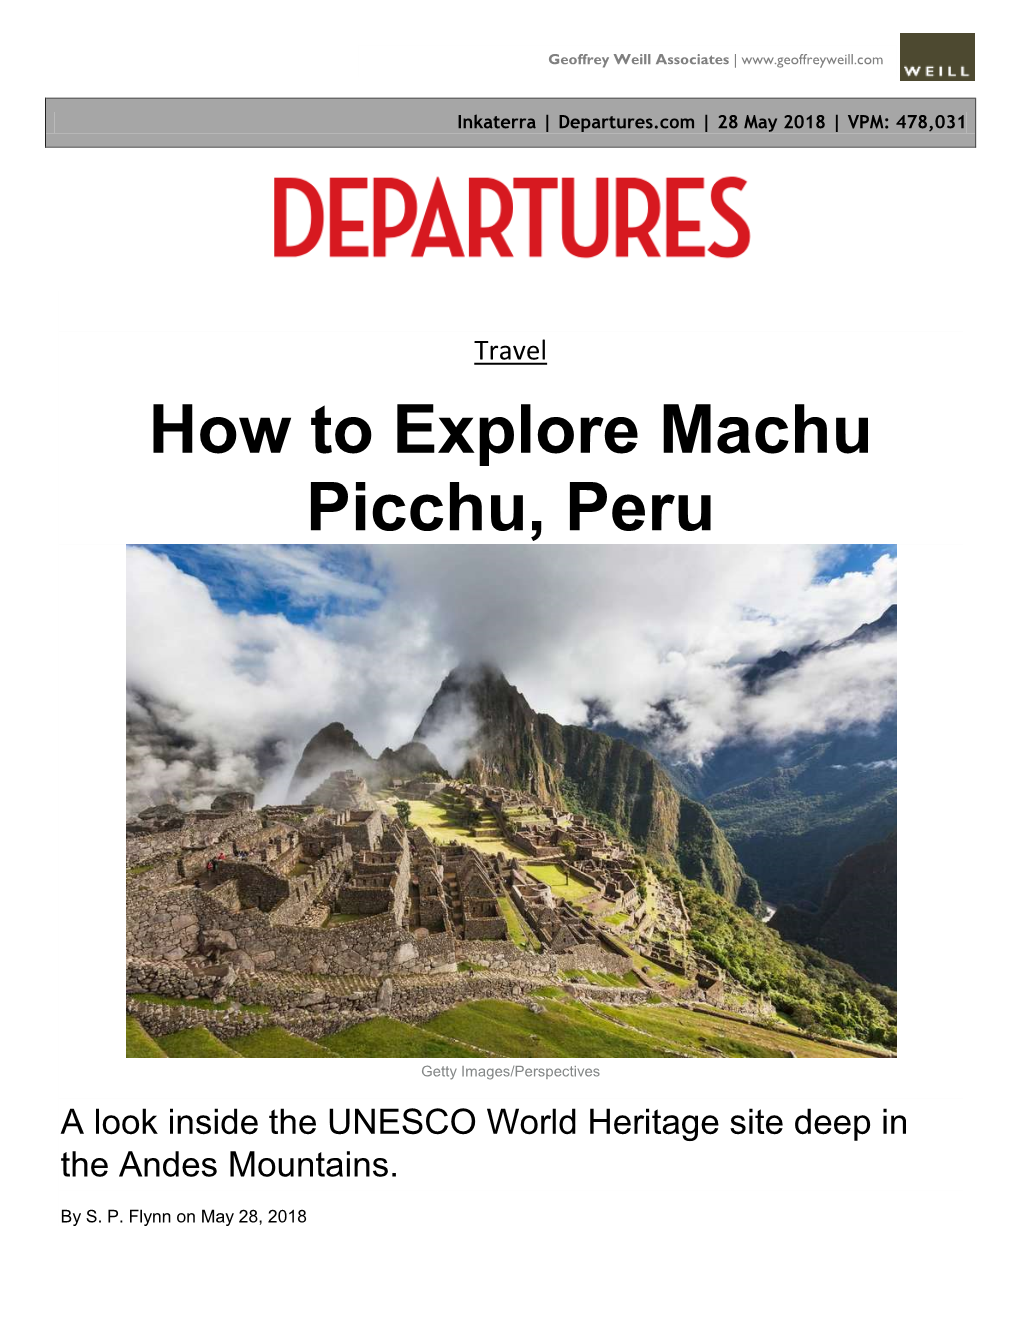 How to Explore Machu Picchu, Peru